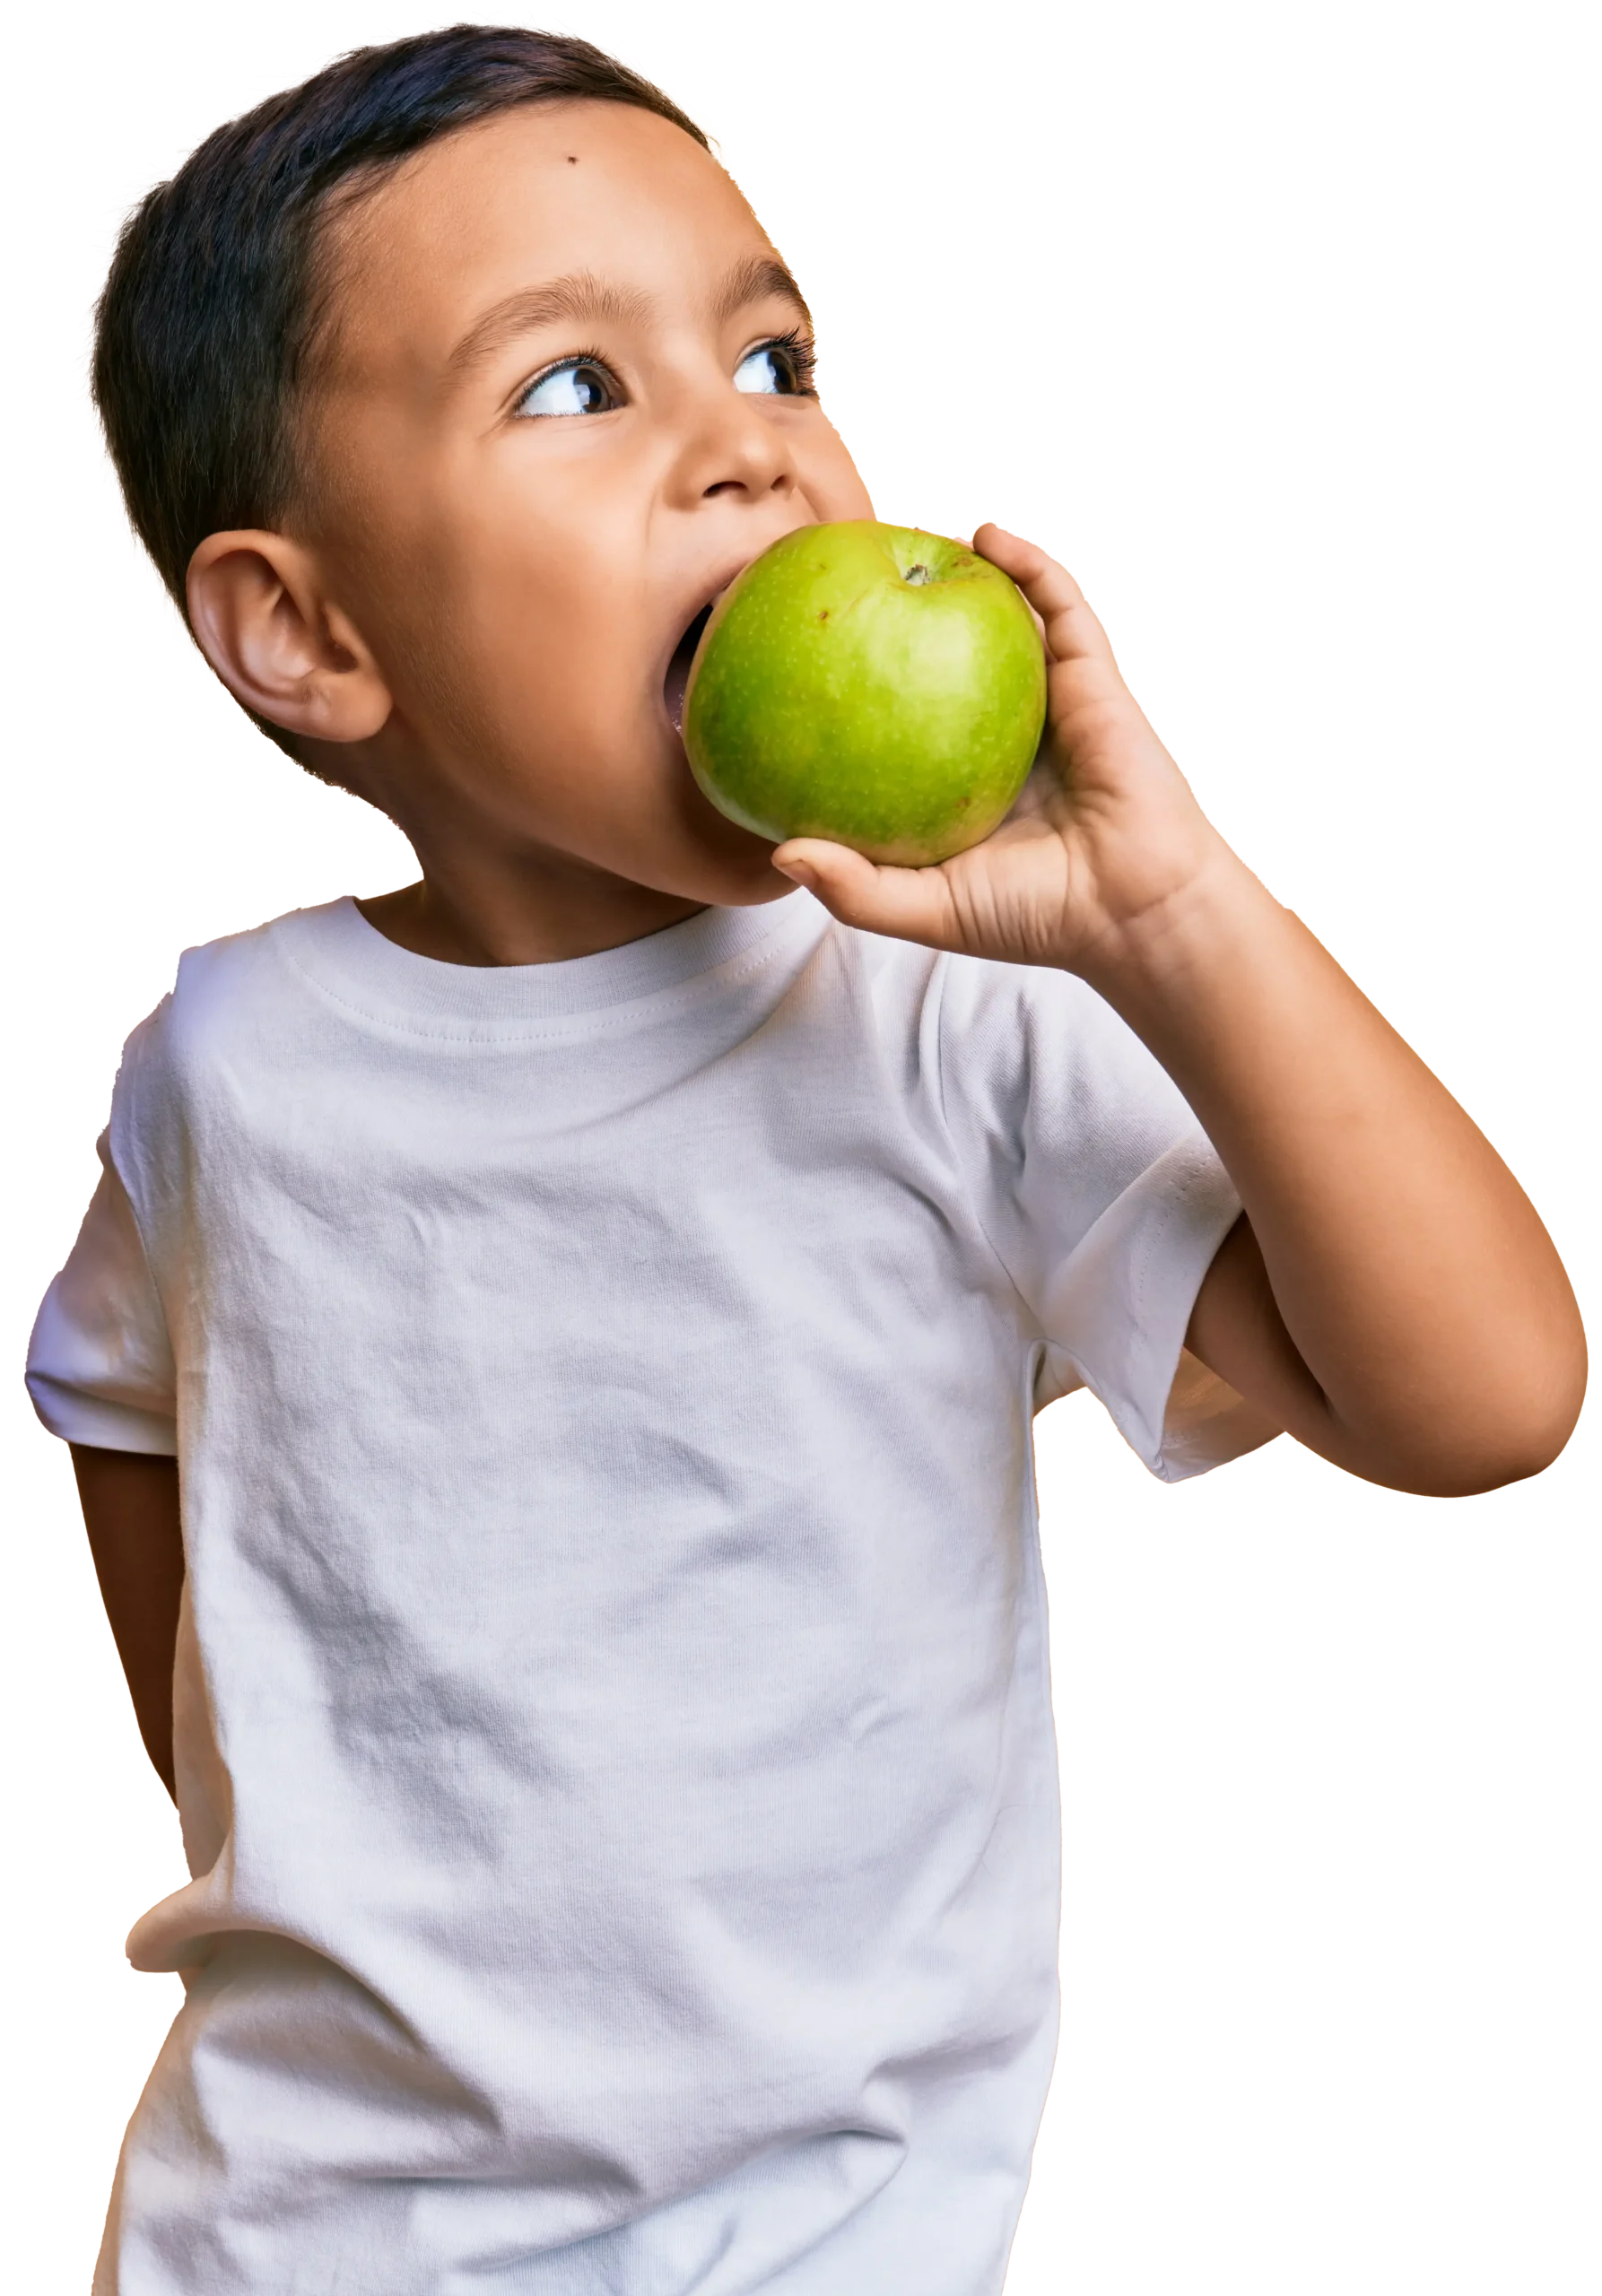 niño comiendo una manzana verde